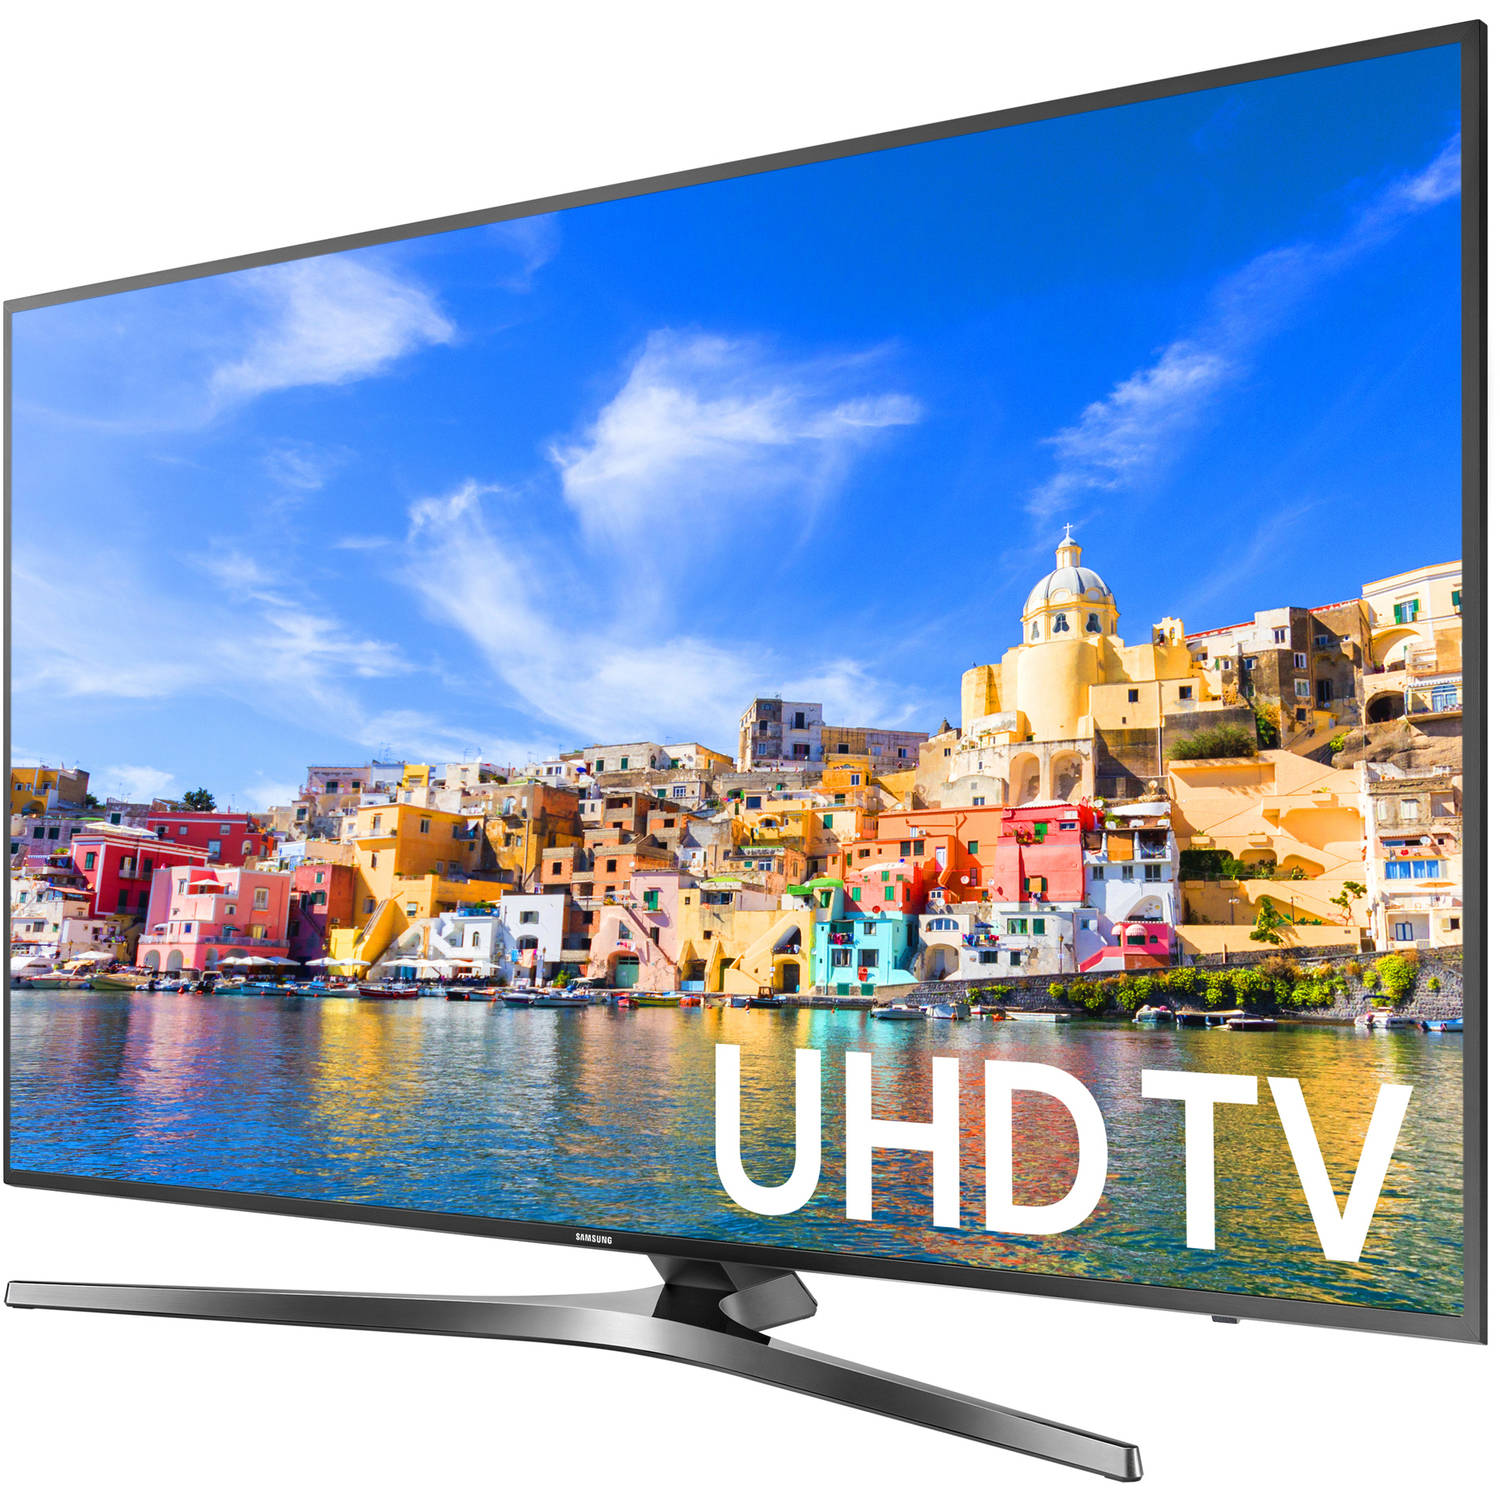 Samsung 55" Class 4K (2160P) Smart LED TV (UN55KU7000) - image 2 of 5